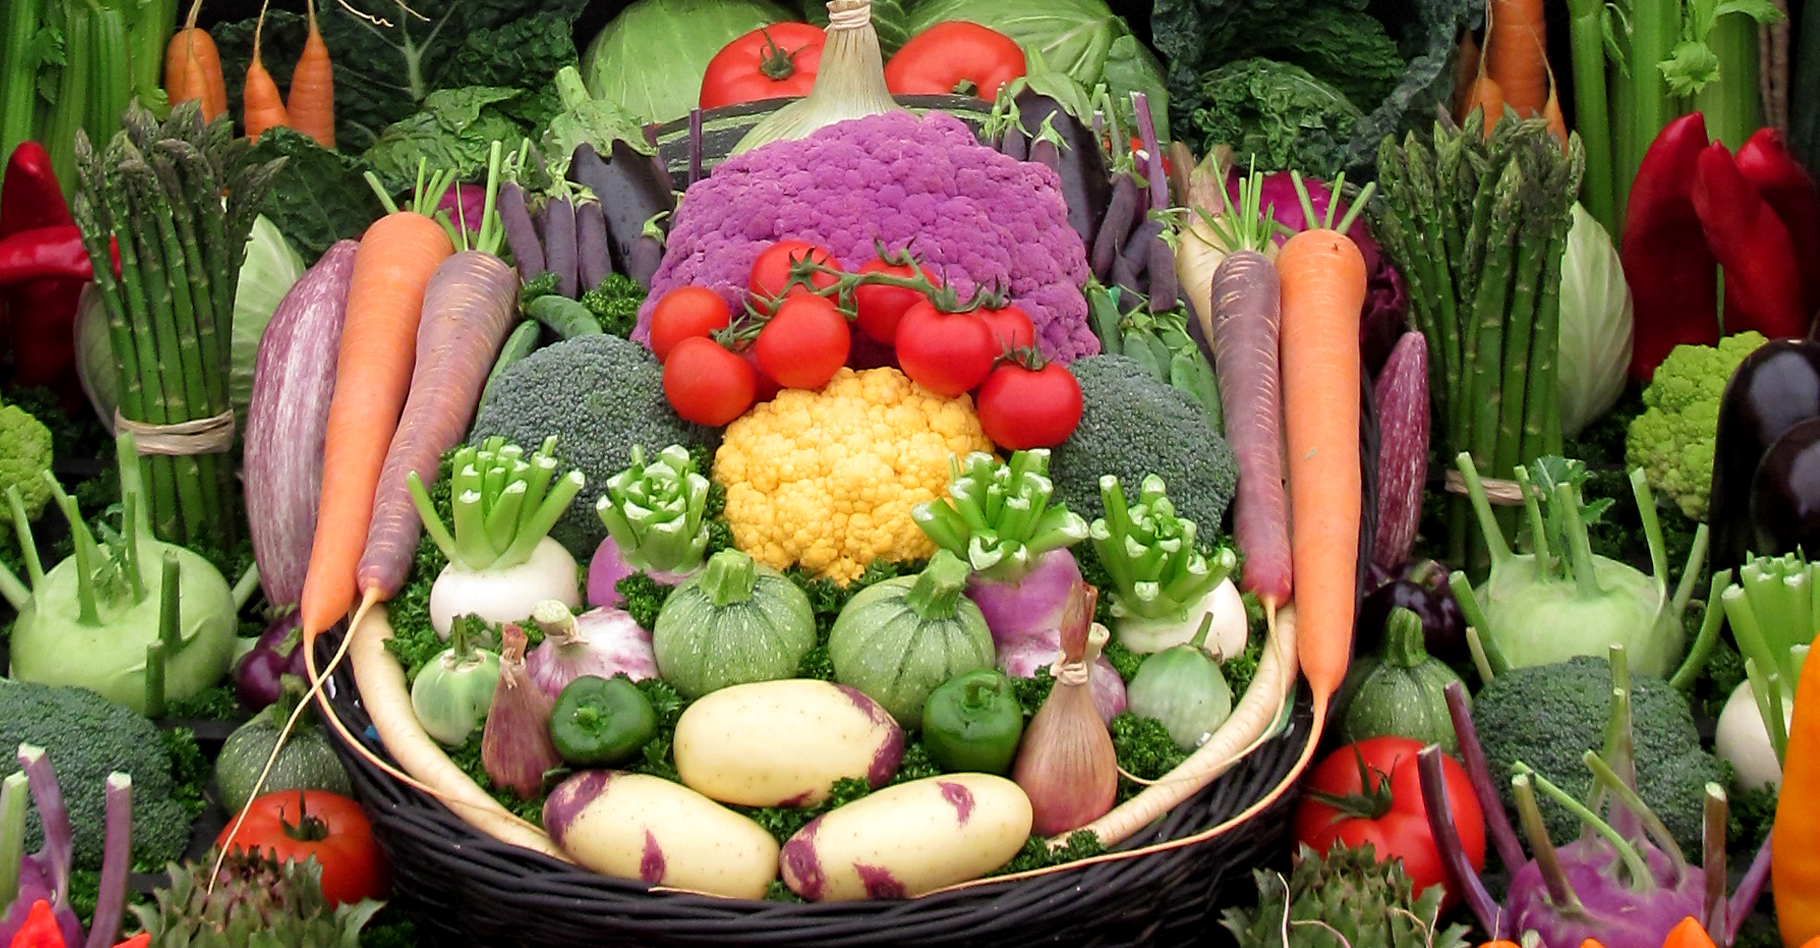 Un choix très coloré de magnifiques légumes. © Man Vyi - Domaine public